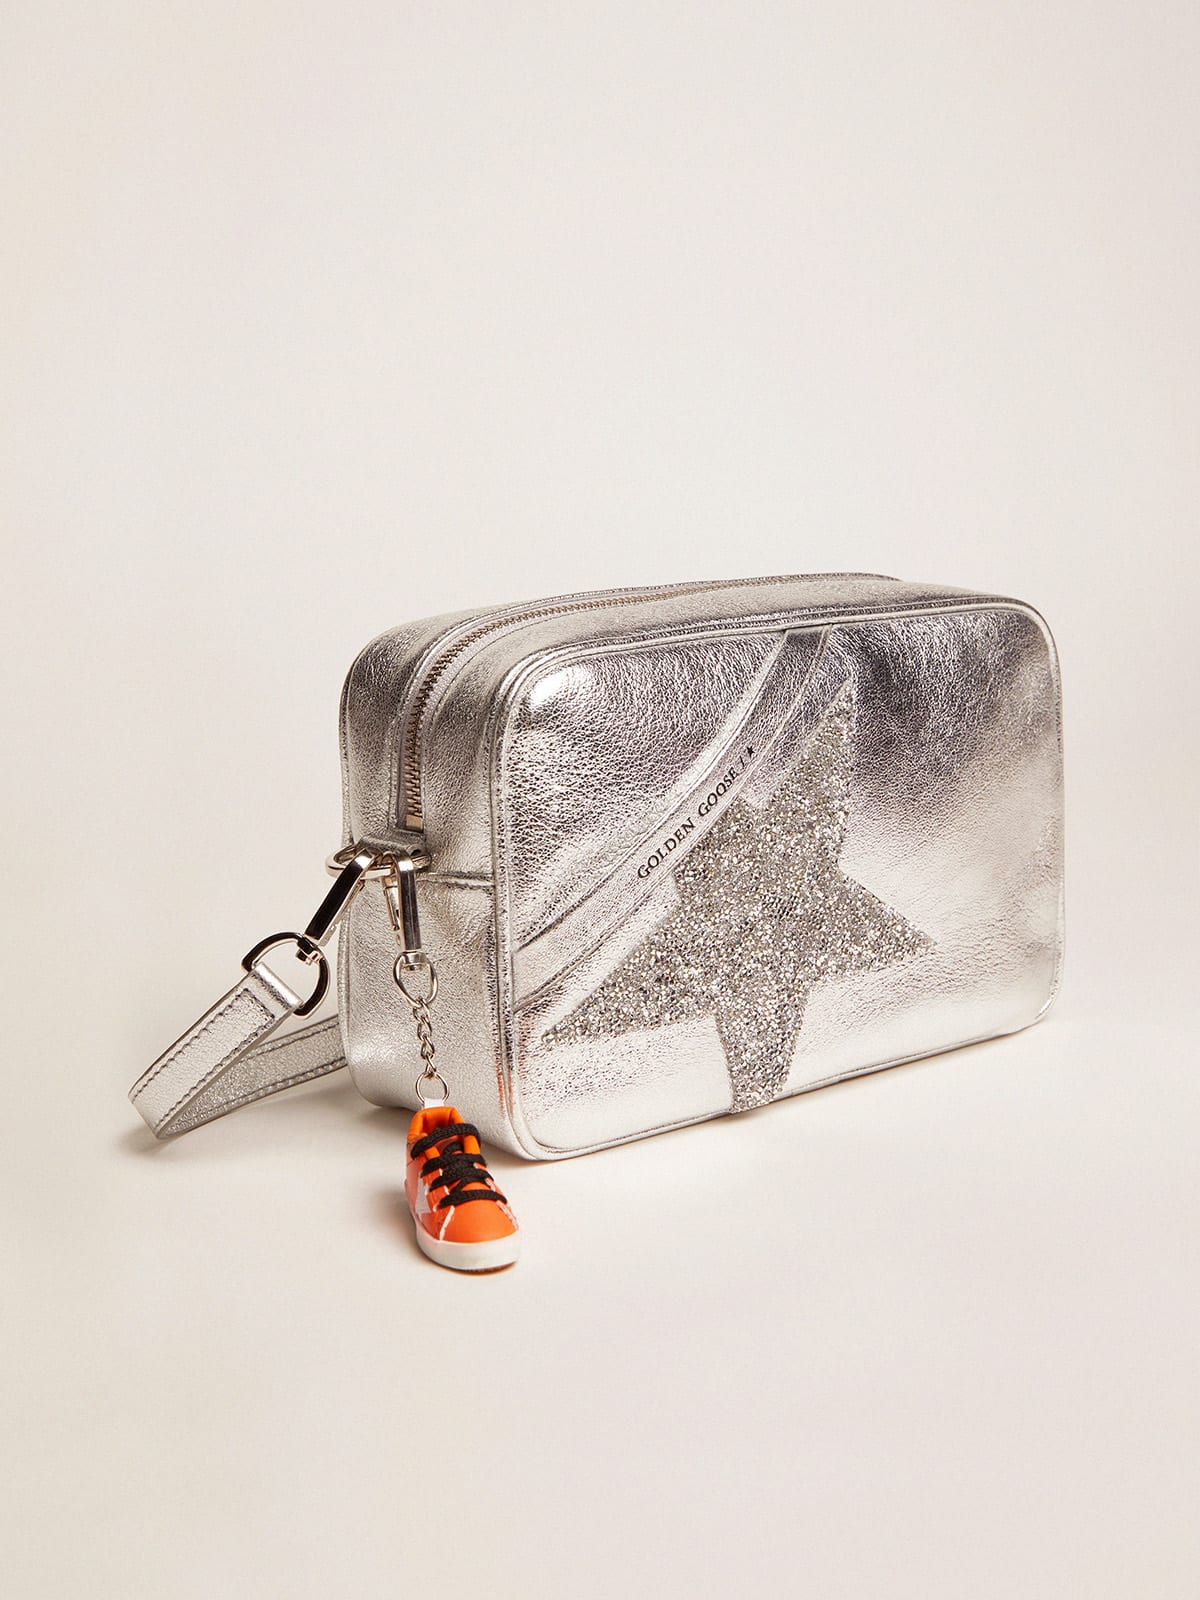 Golden Goose - Silberfarbene Tasche Star Bag aus Metallic-Leder mit Stern aus Swarovski-Kristallen in 